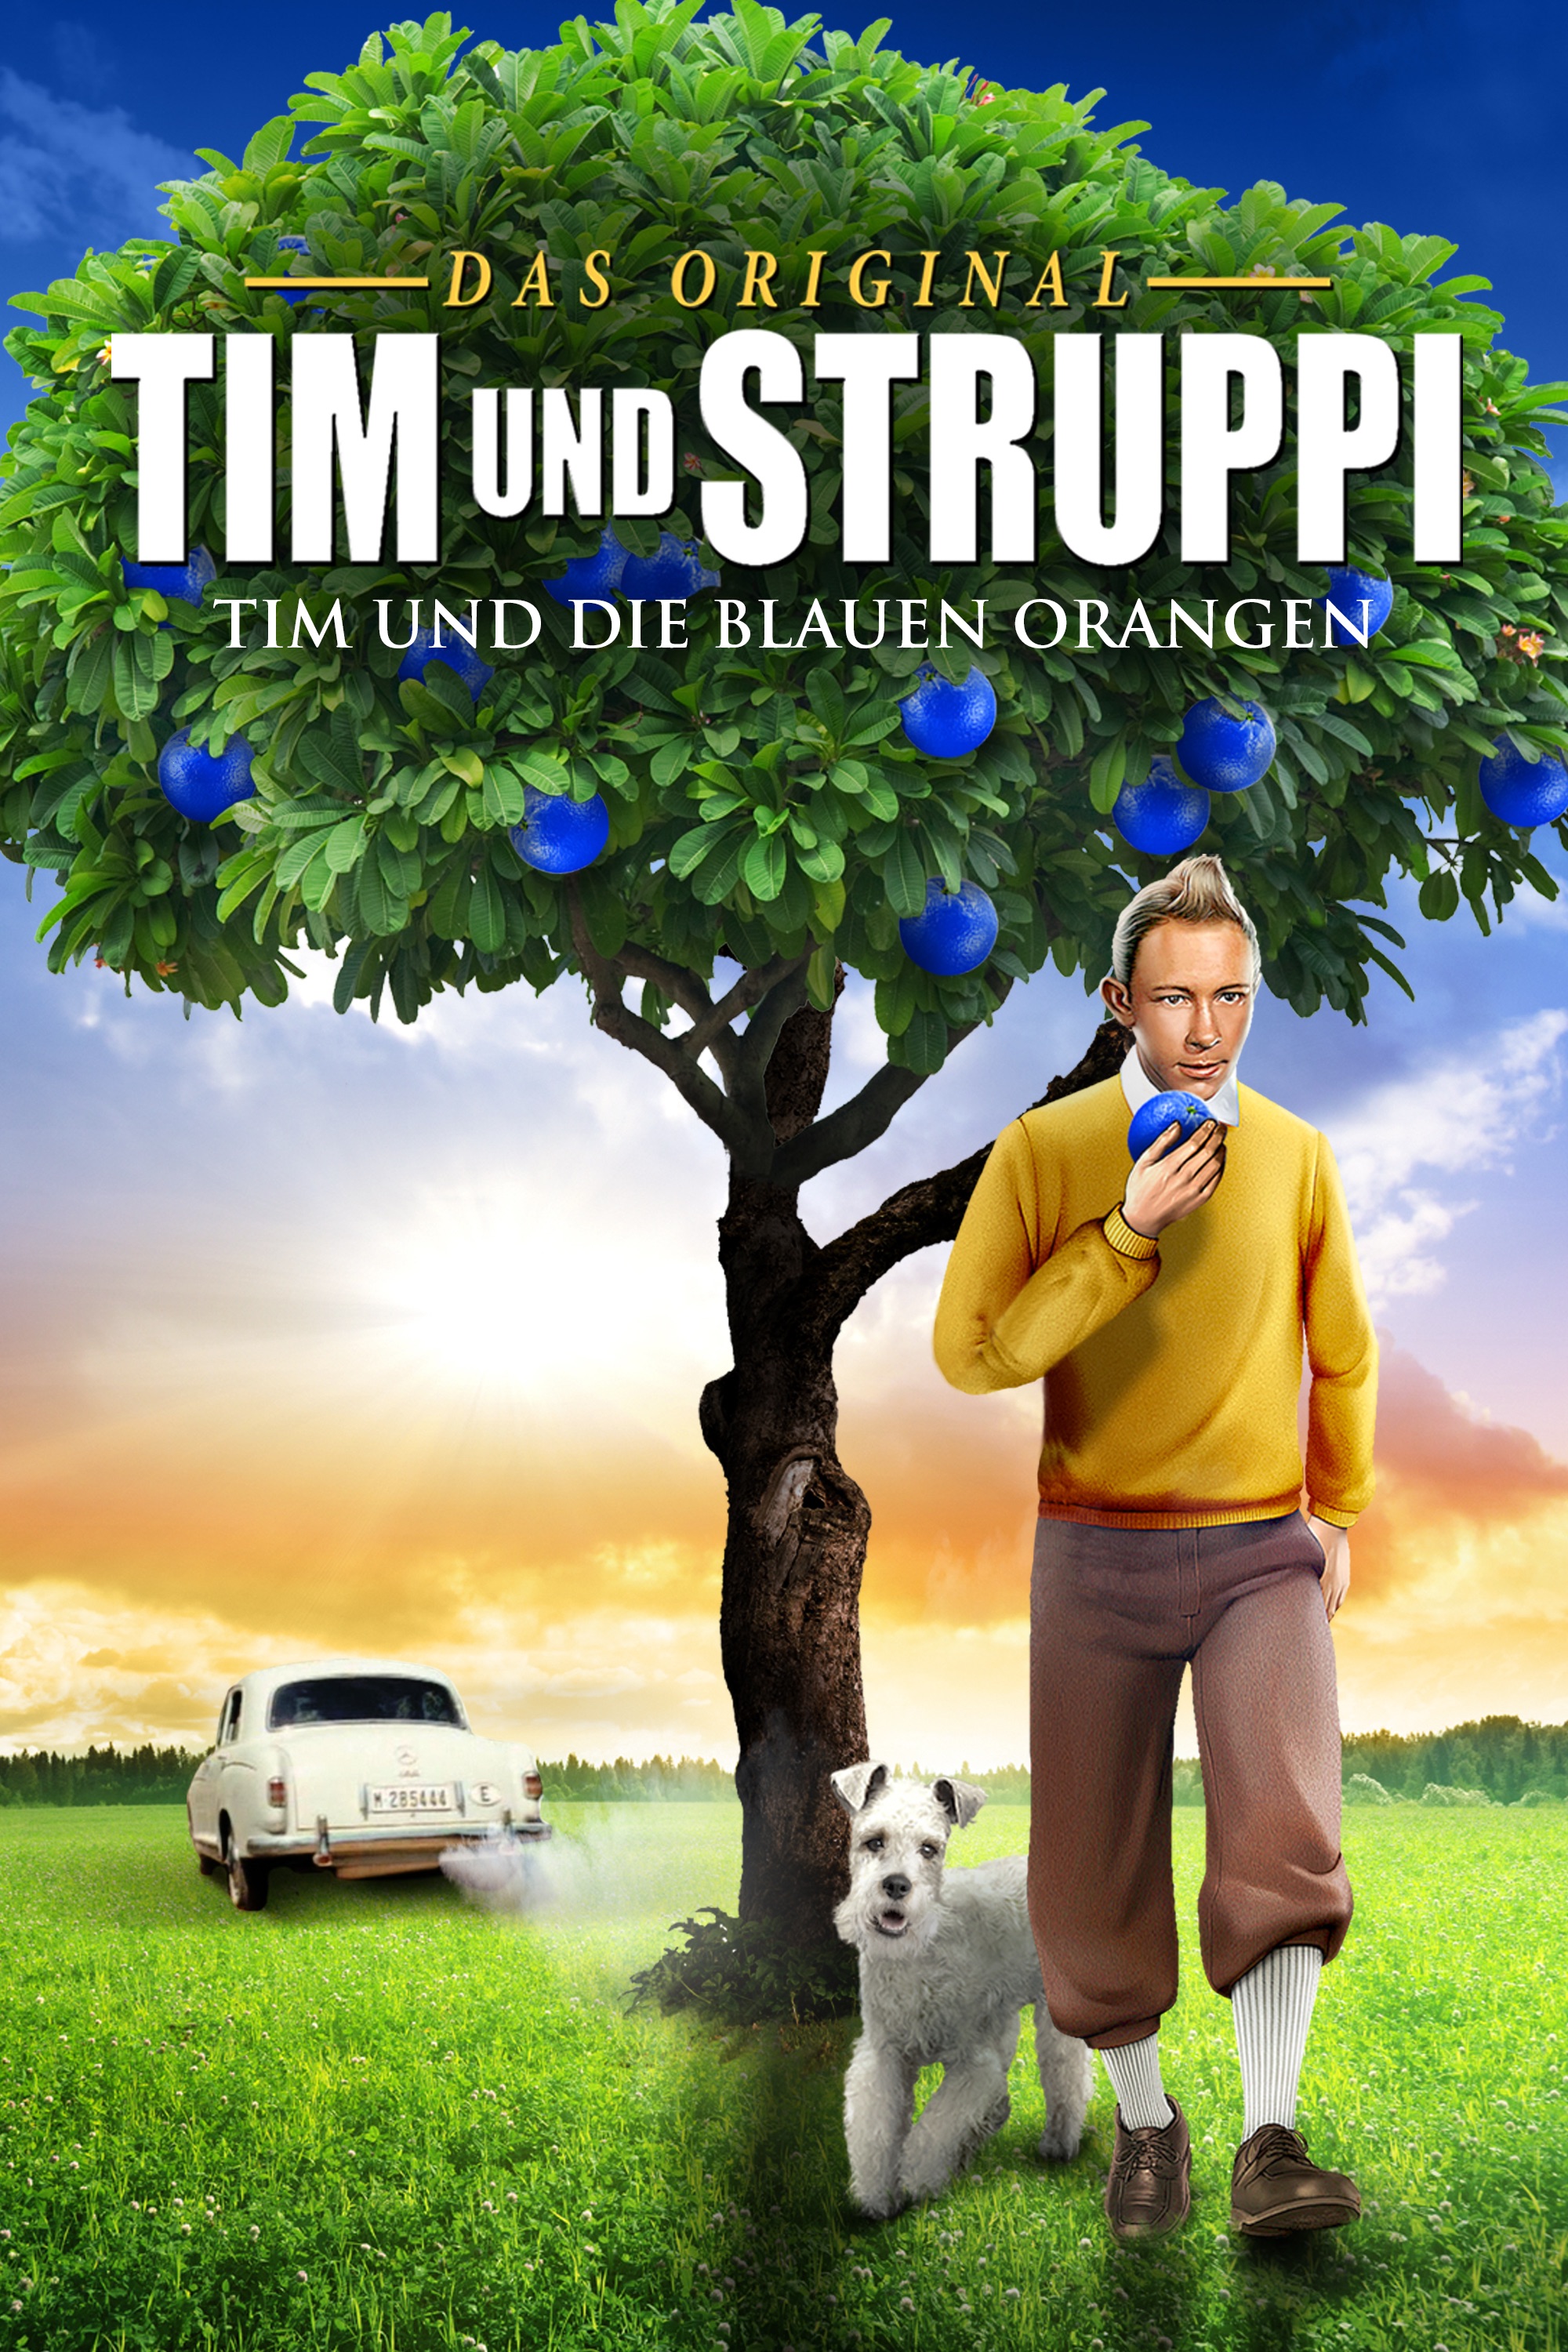 Tim und Struppi und die blauen Orangen - Ein Film von Philippe Condroyer